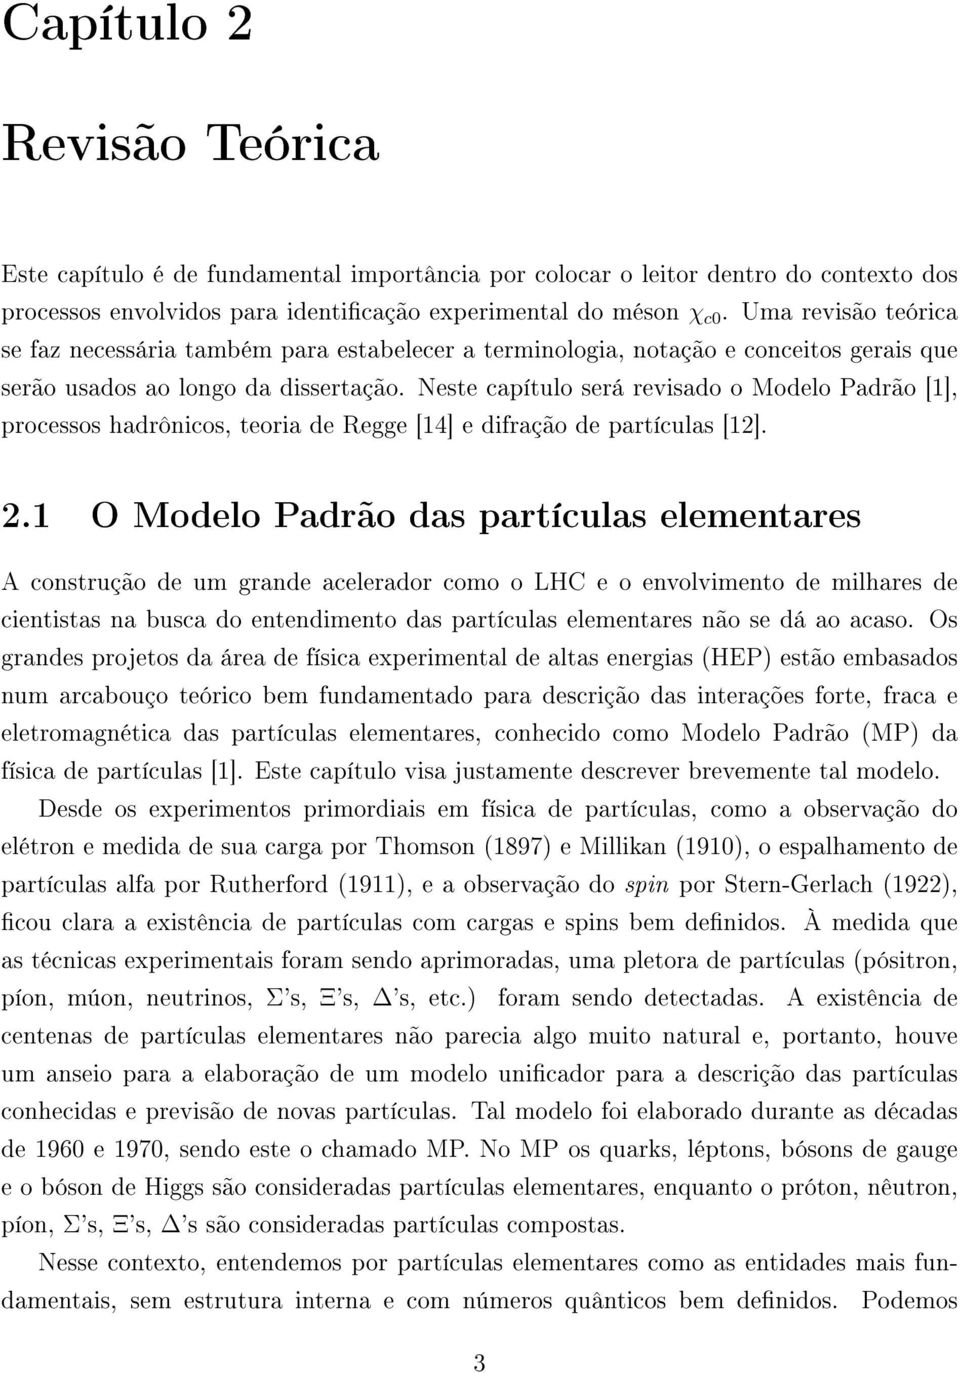 Neste capítulo será revisado o Modelo Padrão [1], processos hadrônicos, teoria de Regge [14] e difração de partículas [12]. 2.